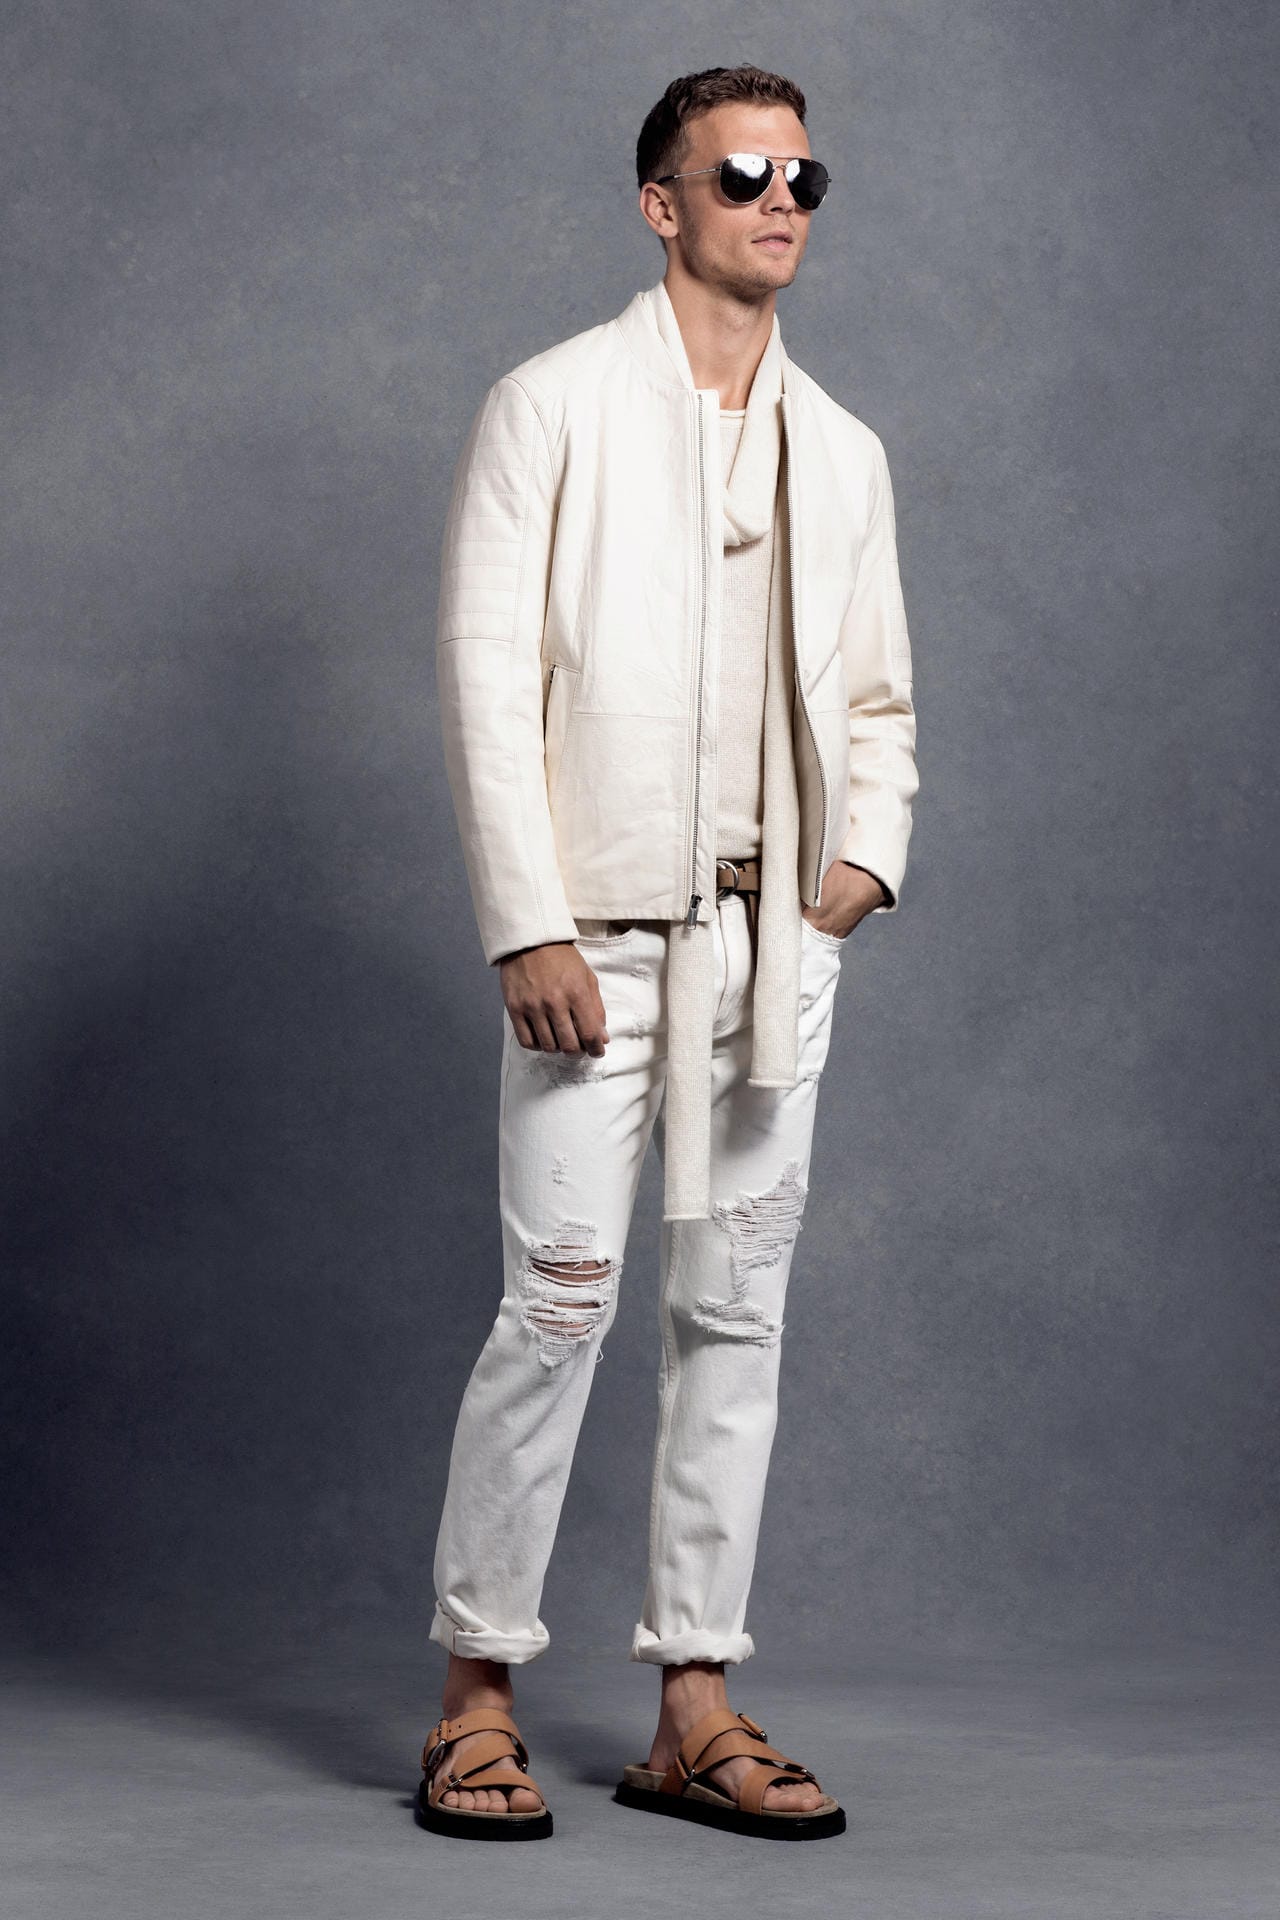 Michael Kors zeigt weiße Destroyed Jeans zu Sandalen - im Sommer dürfen Männer gerne wild kombinieren (Lederjacke 1150 Euro, Pullover 260 Euro, Schal 170 Euro, Jeans 170 Euro, Sandalen 200 Euro).